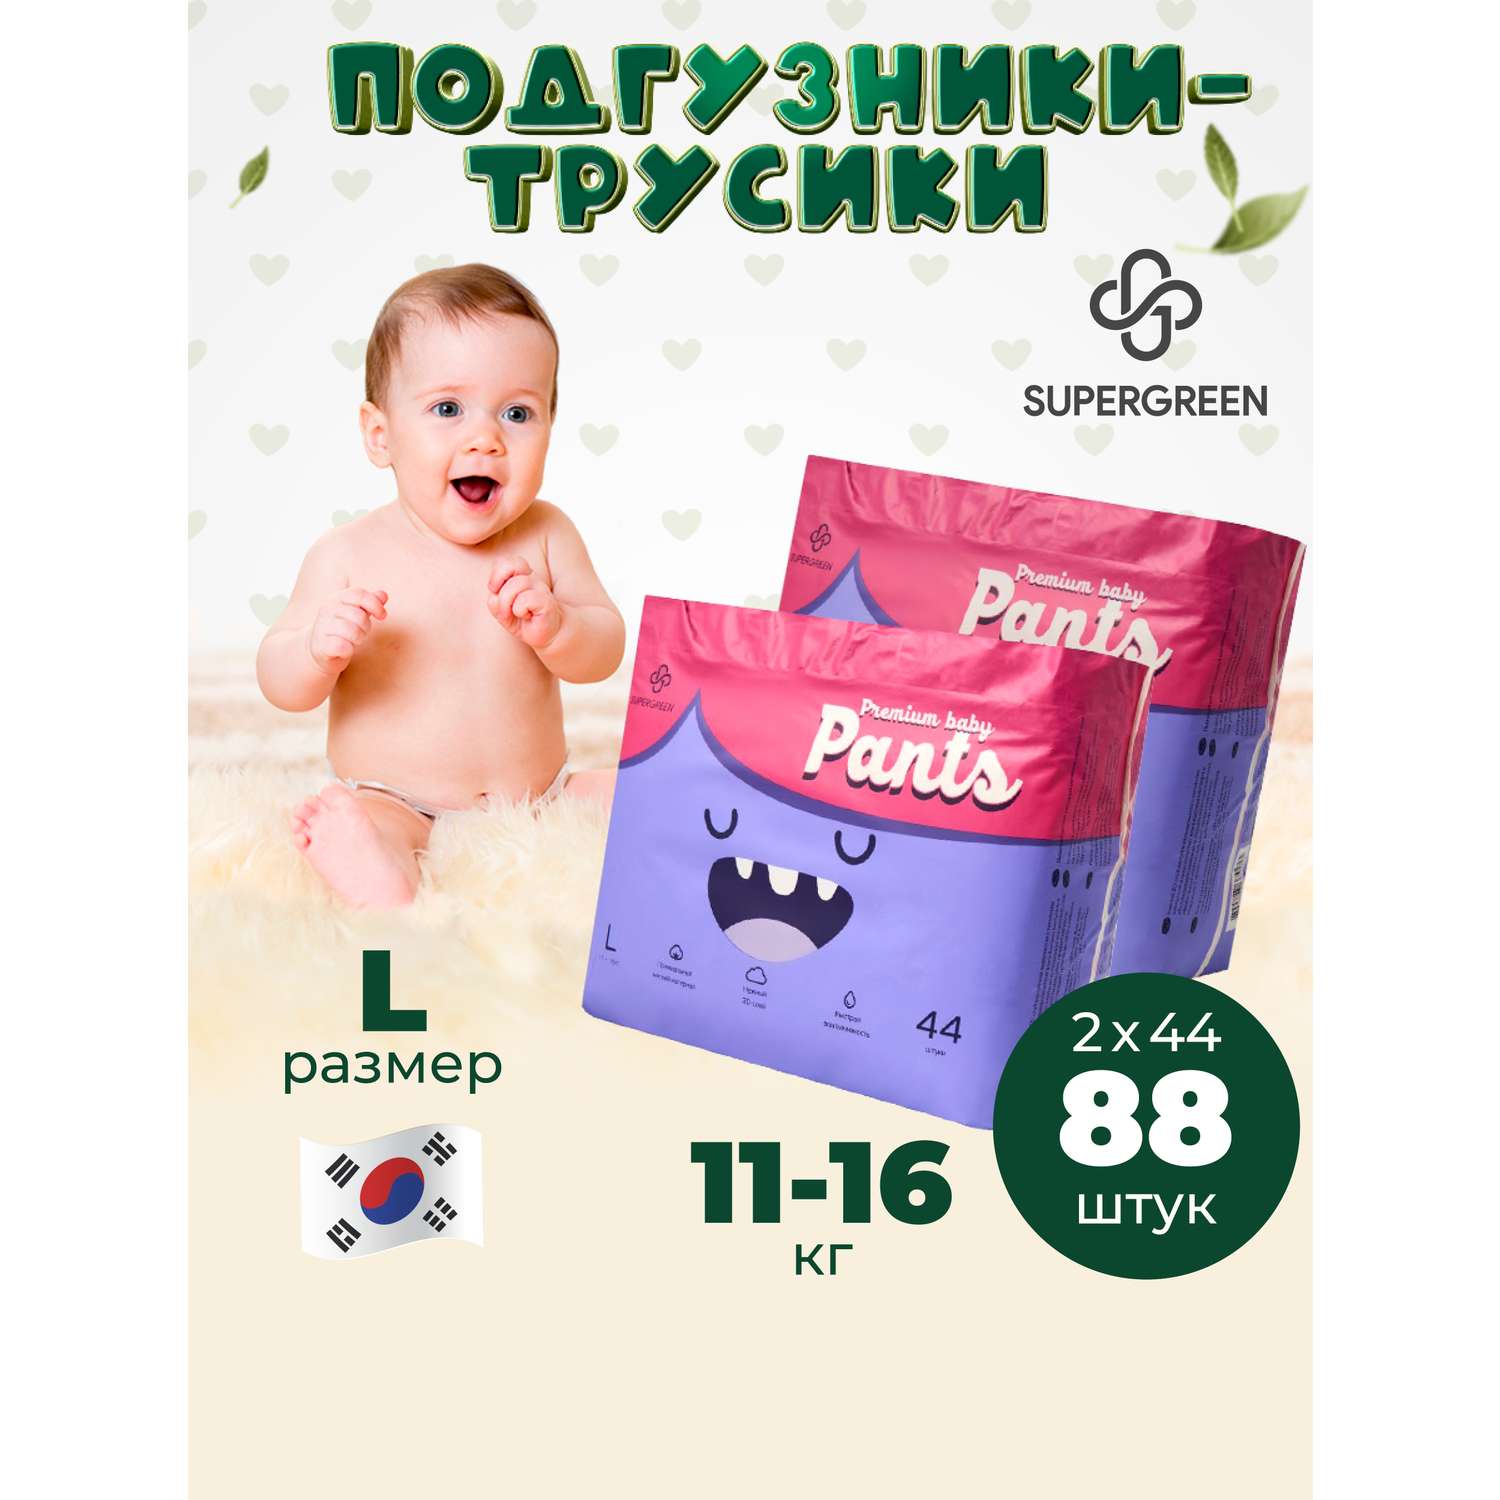 Трусики-подгузники SUPERGREEN Premium baby Pants L размер 2 упаковки по 44 шт 11-16 кг ультрамягкие - фото 1